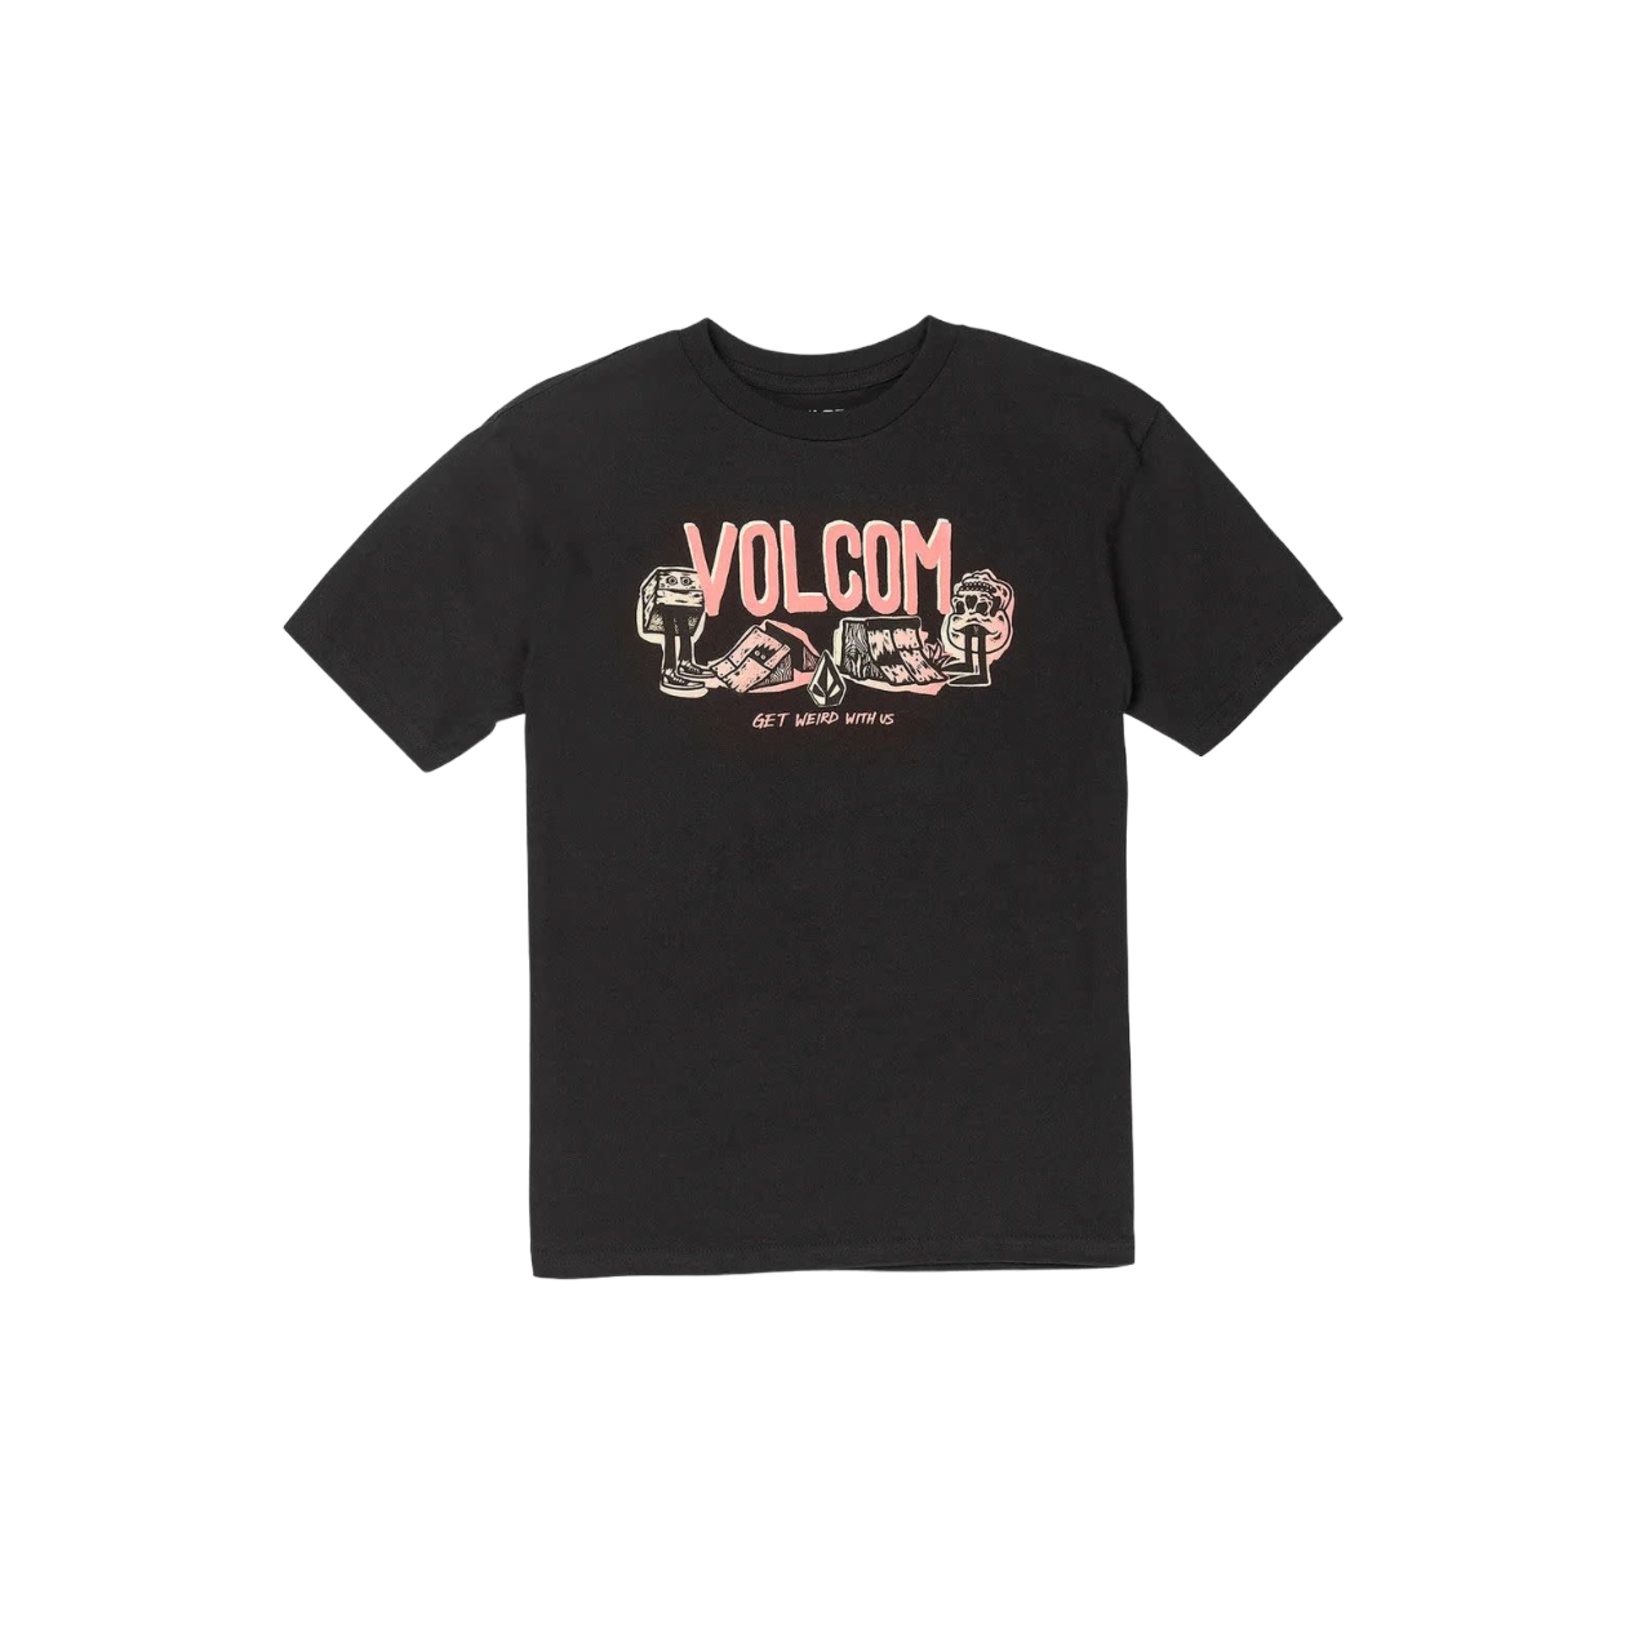 Volcom Volcom Sieb Wuz Here S/S T Shirt - Black